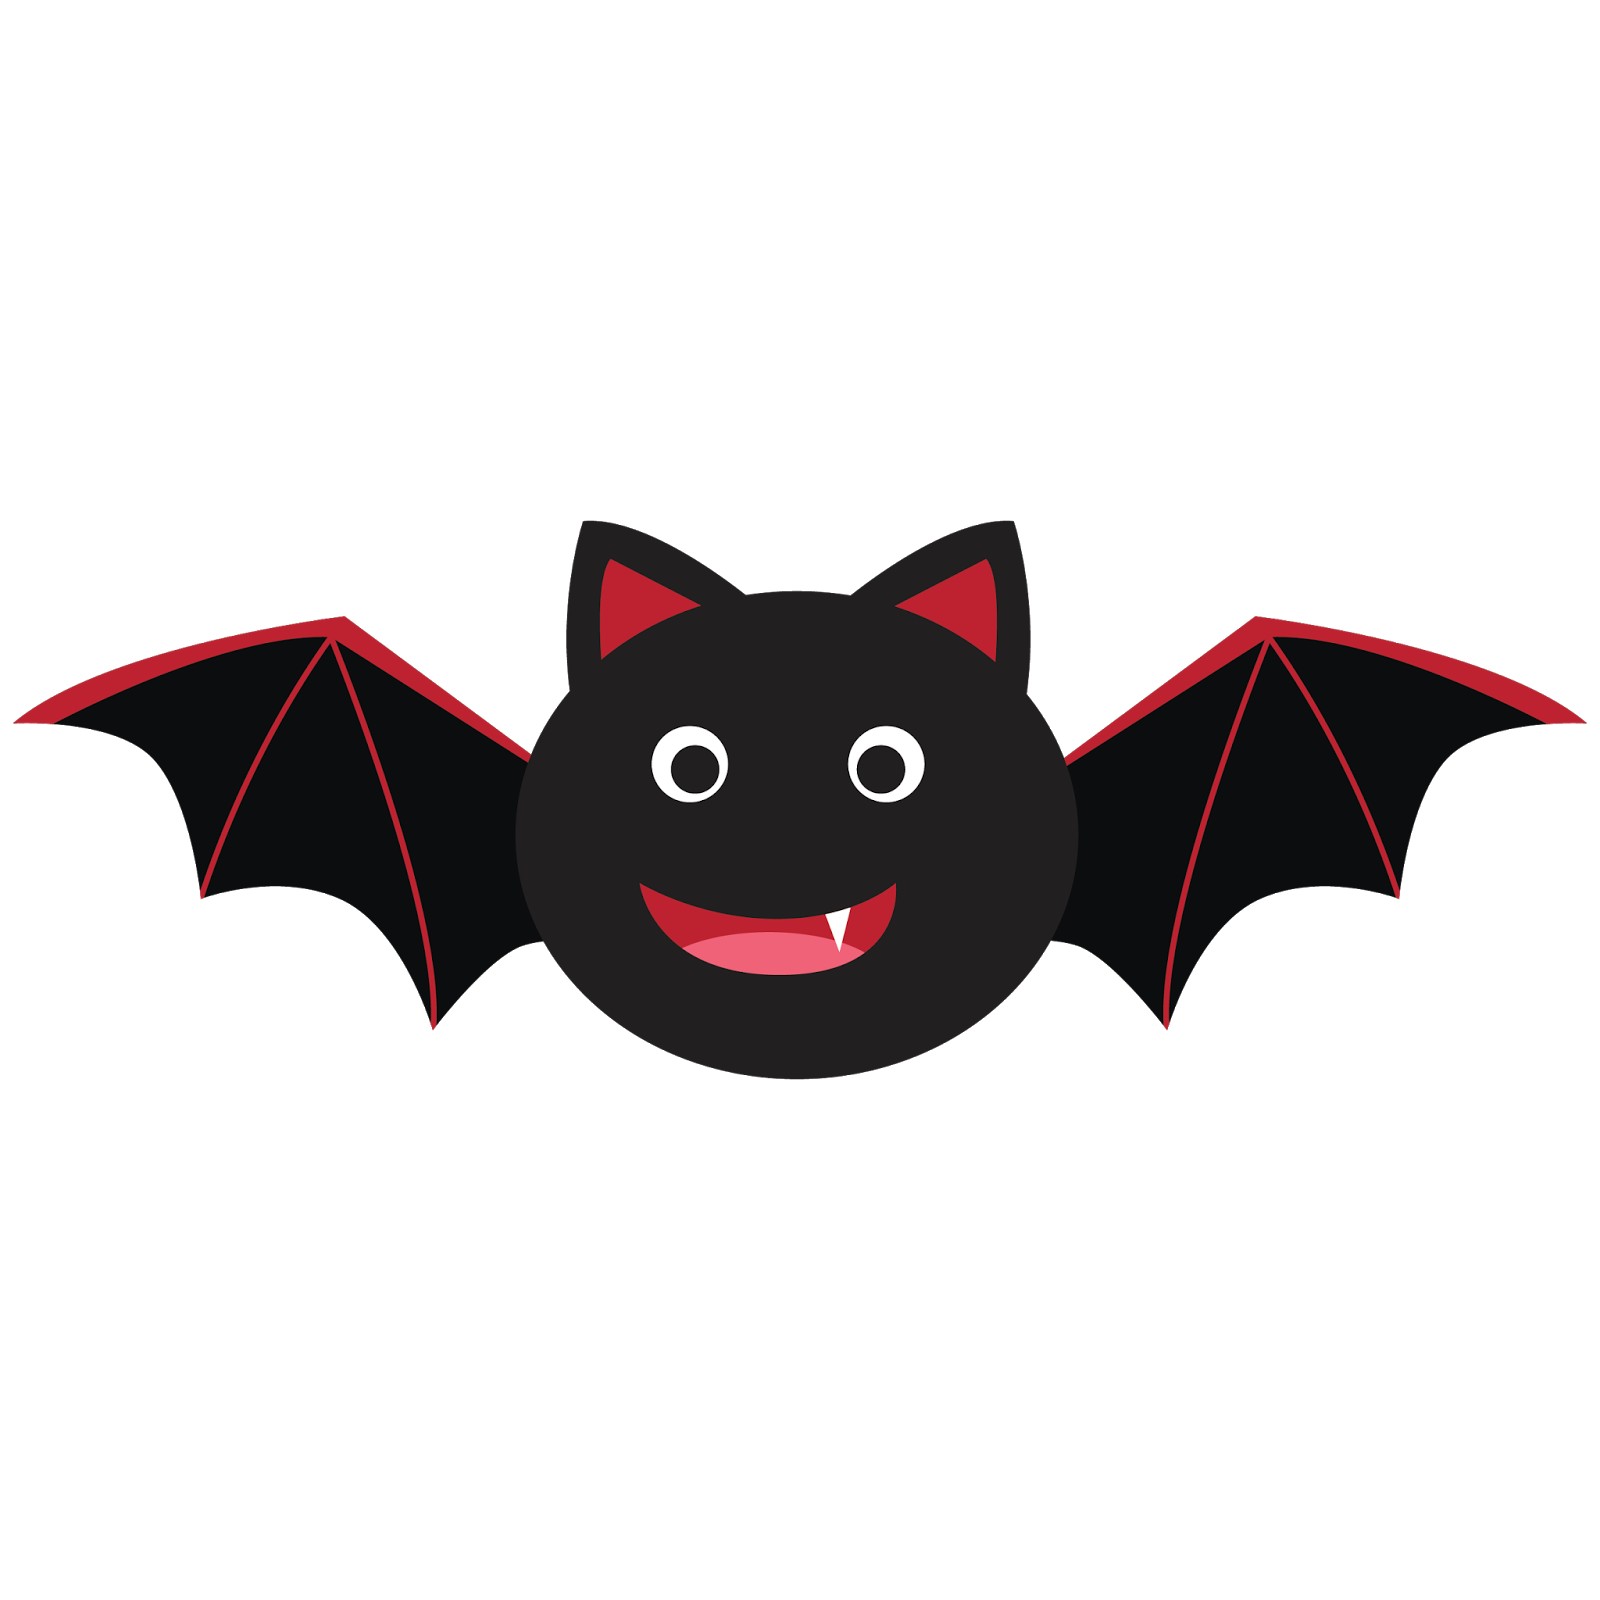 Little Halloween Bat! — Crafthubs